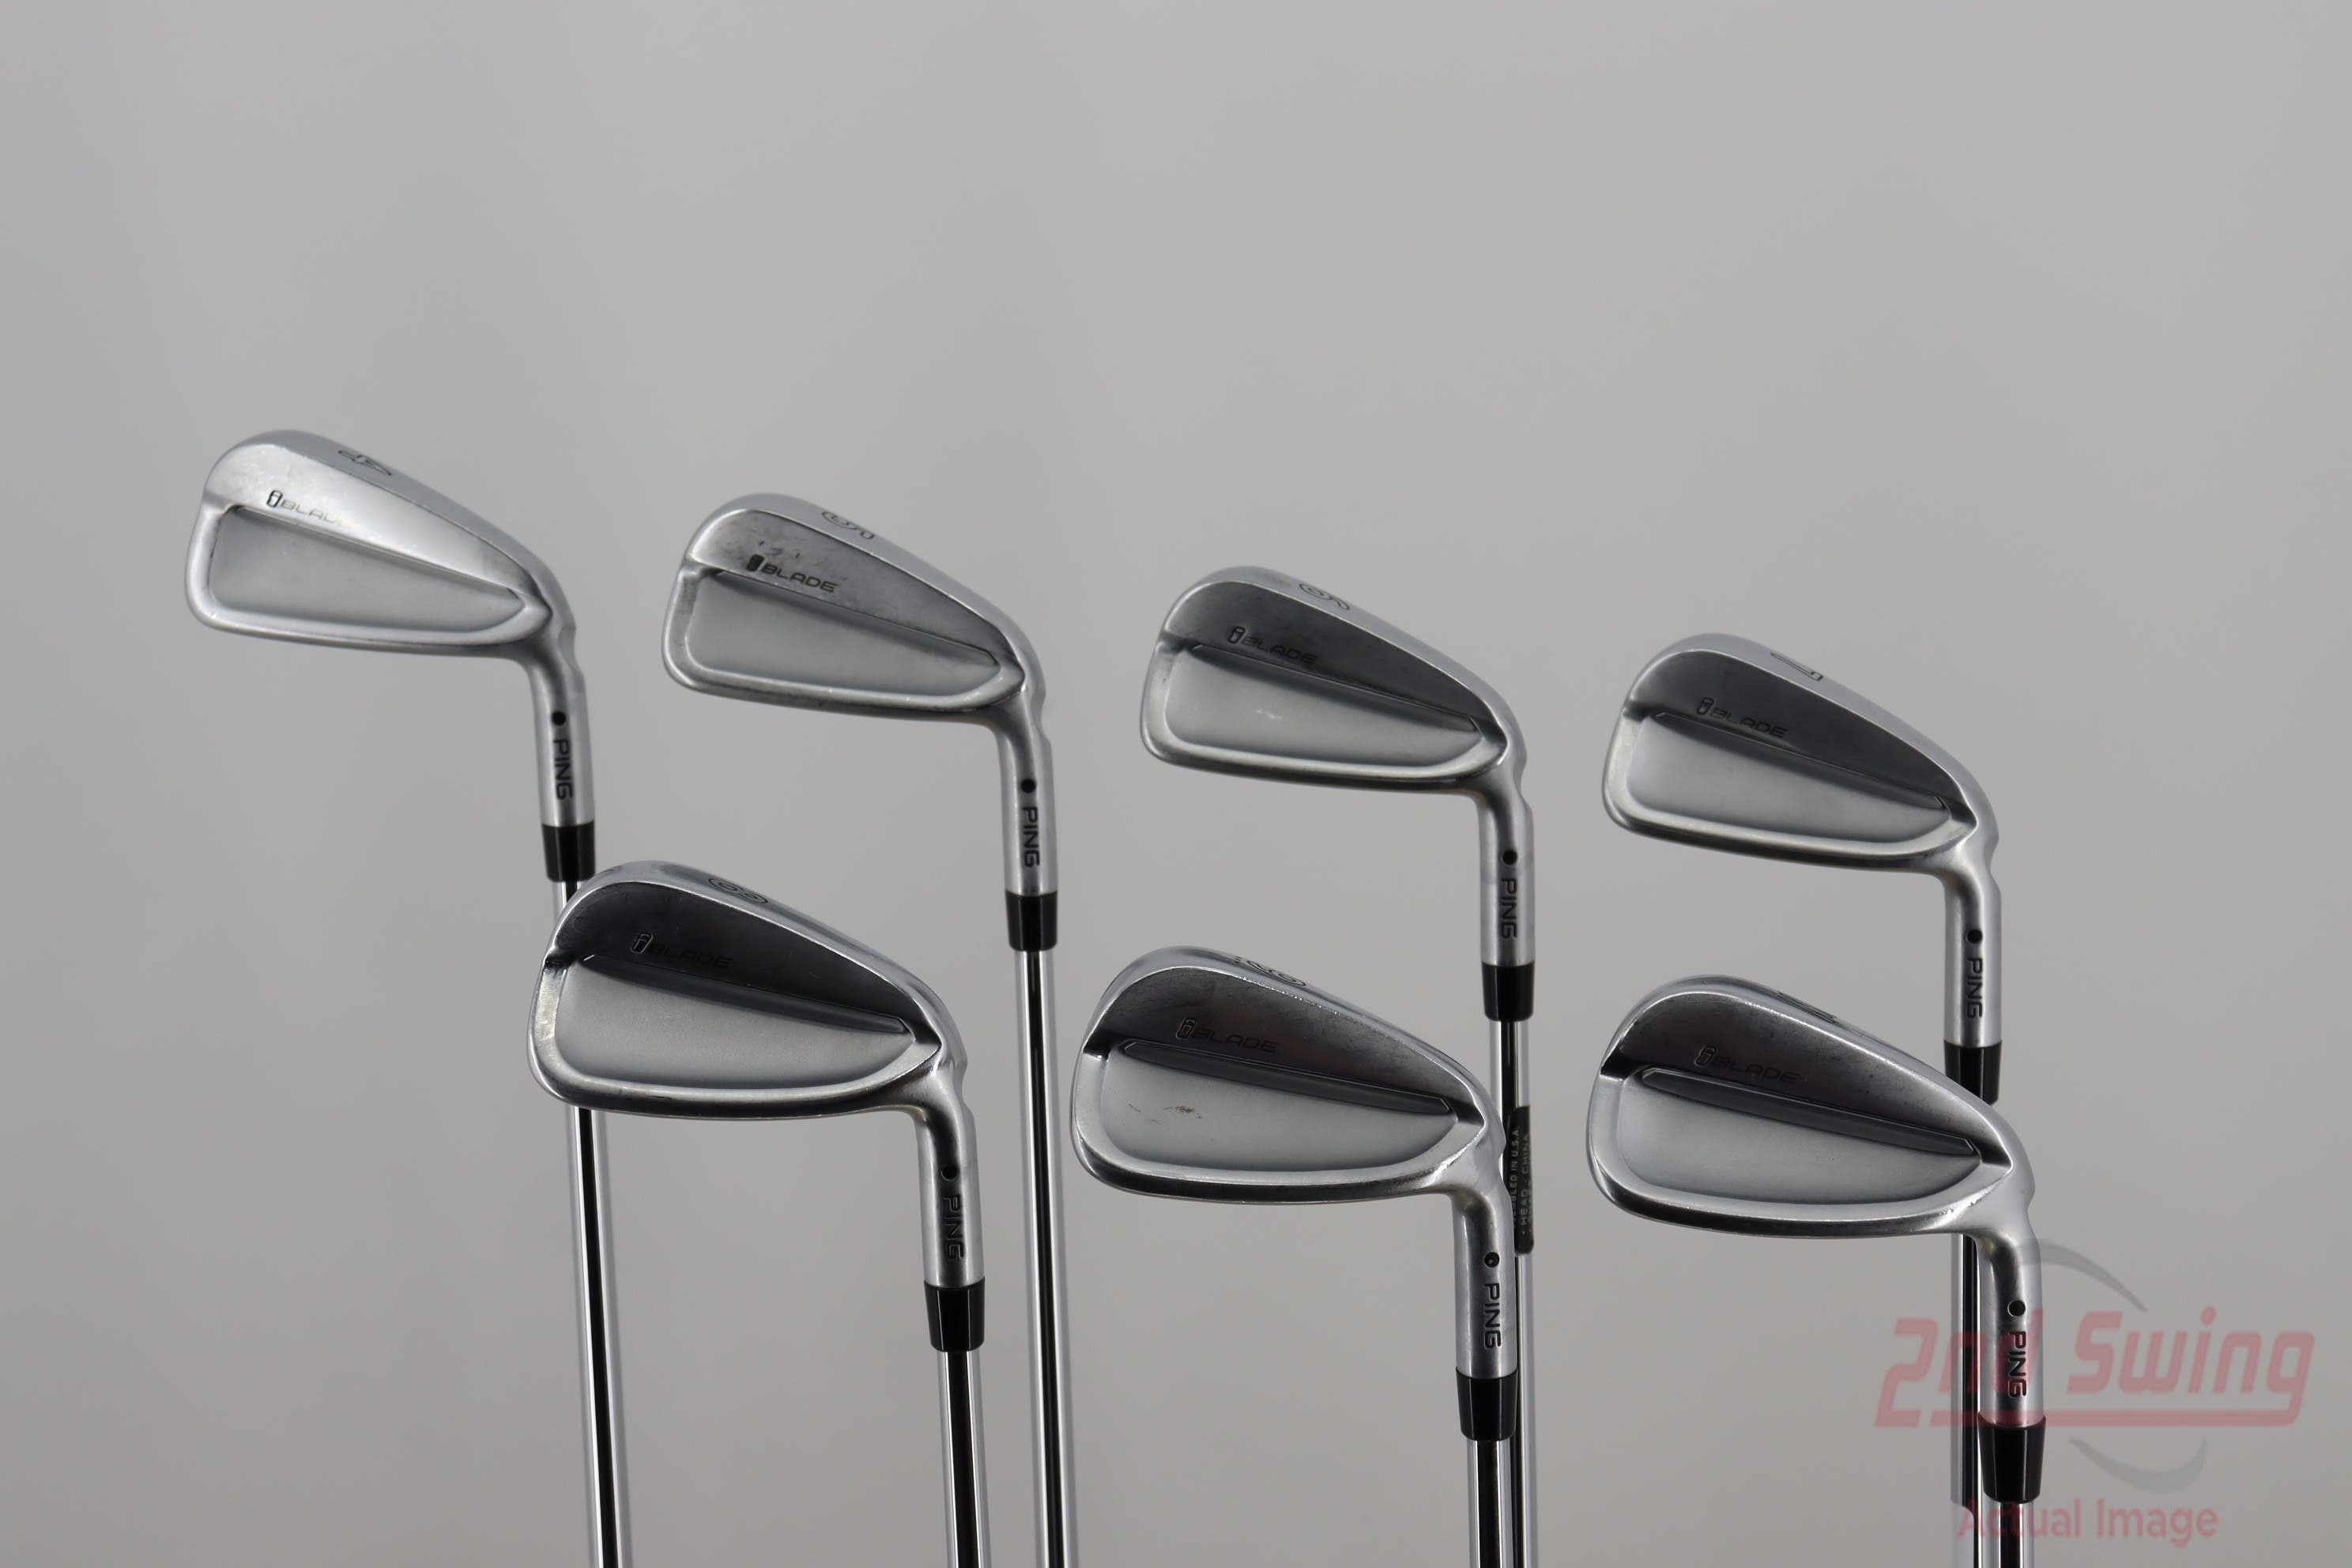 Ping iBlade Iron Set | 2nd Swing Golf